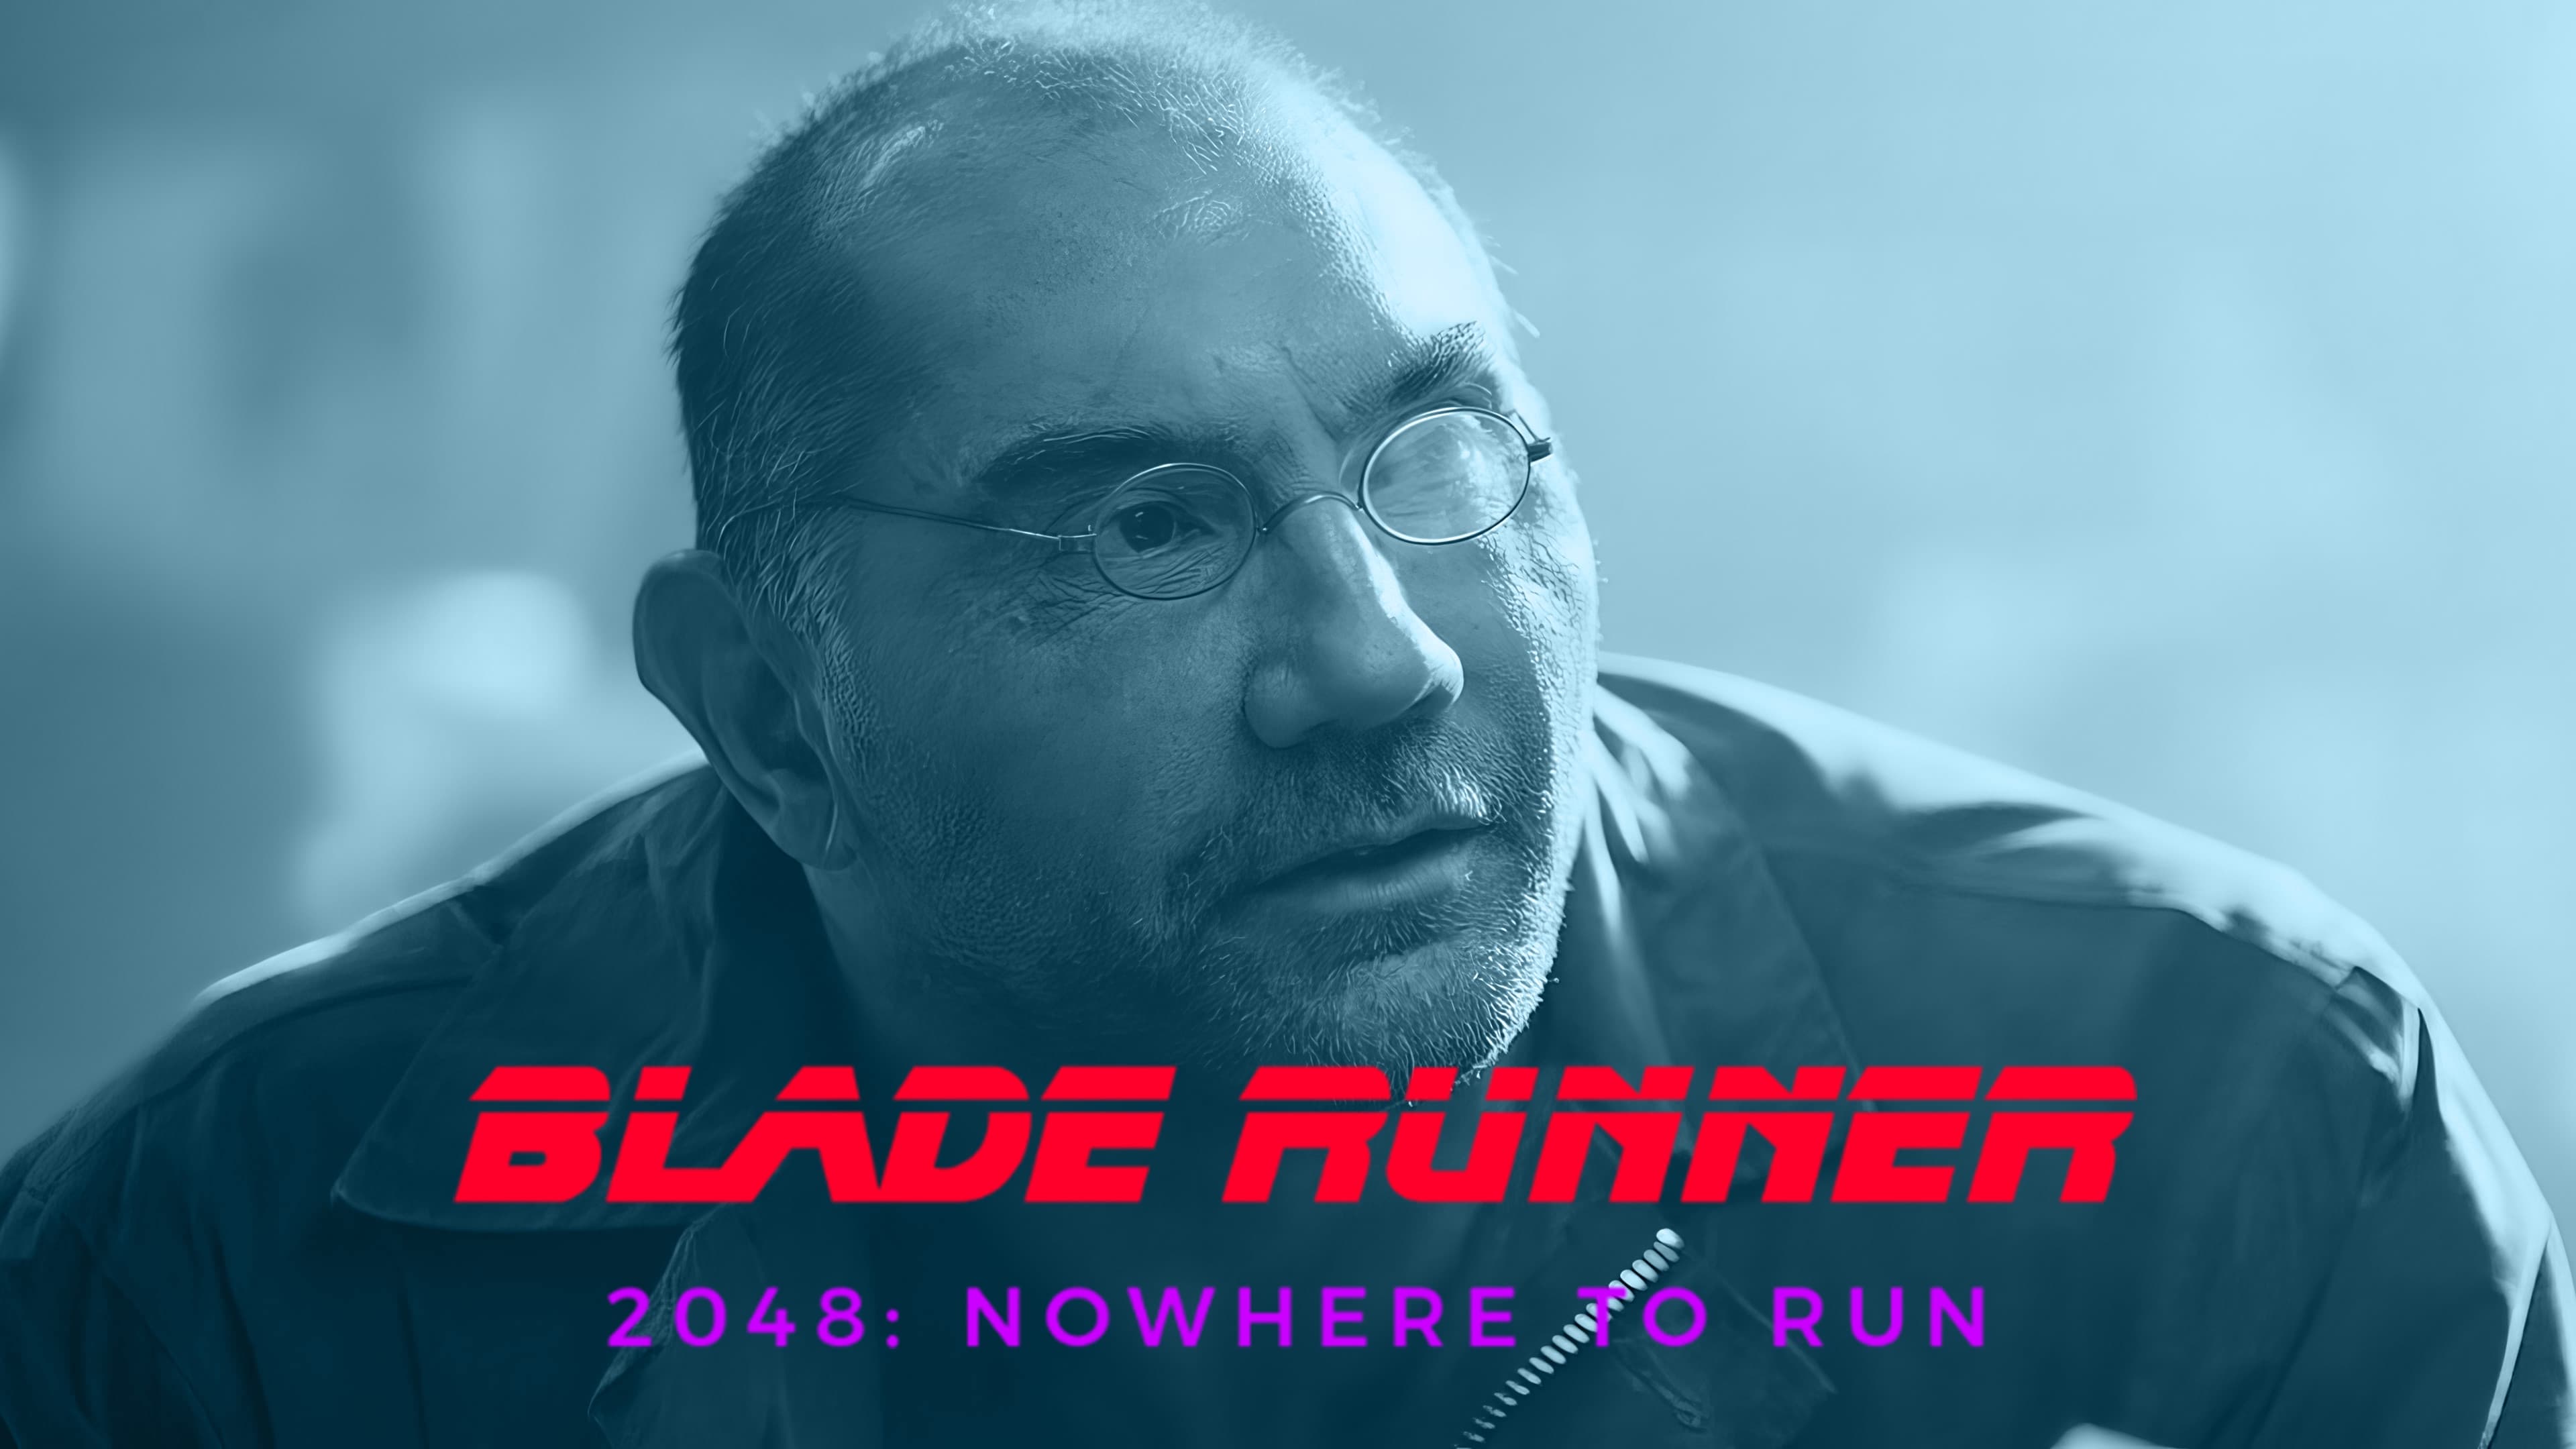 2048: Nowhere to Run (2017)